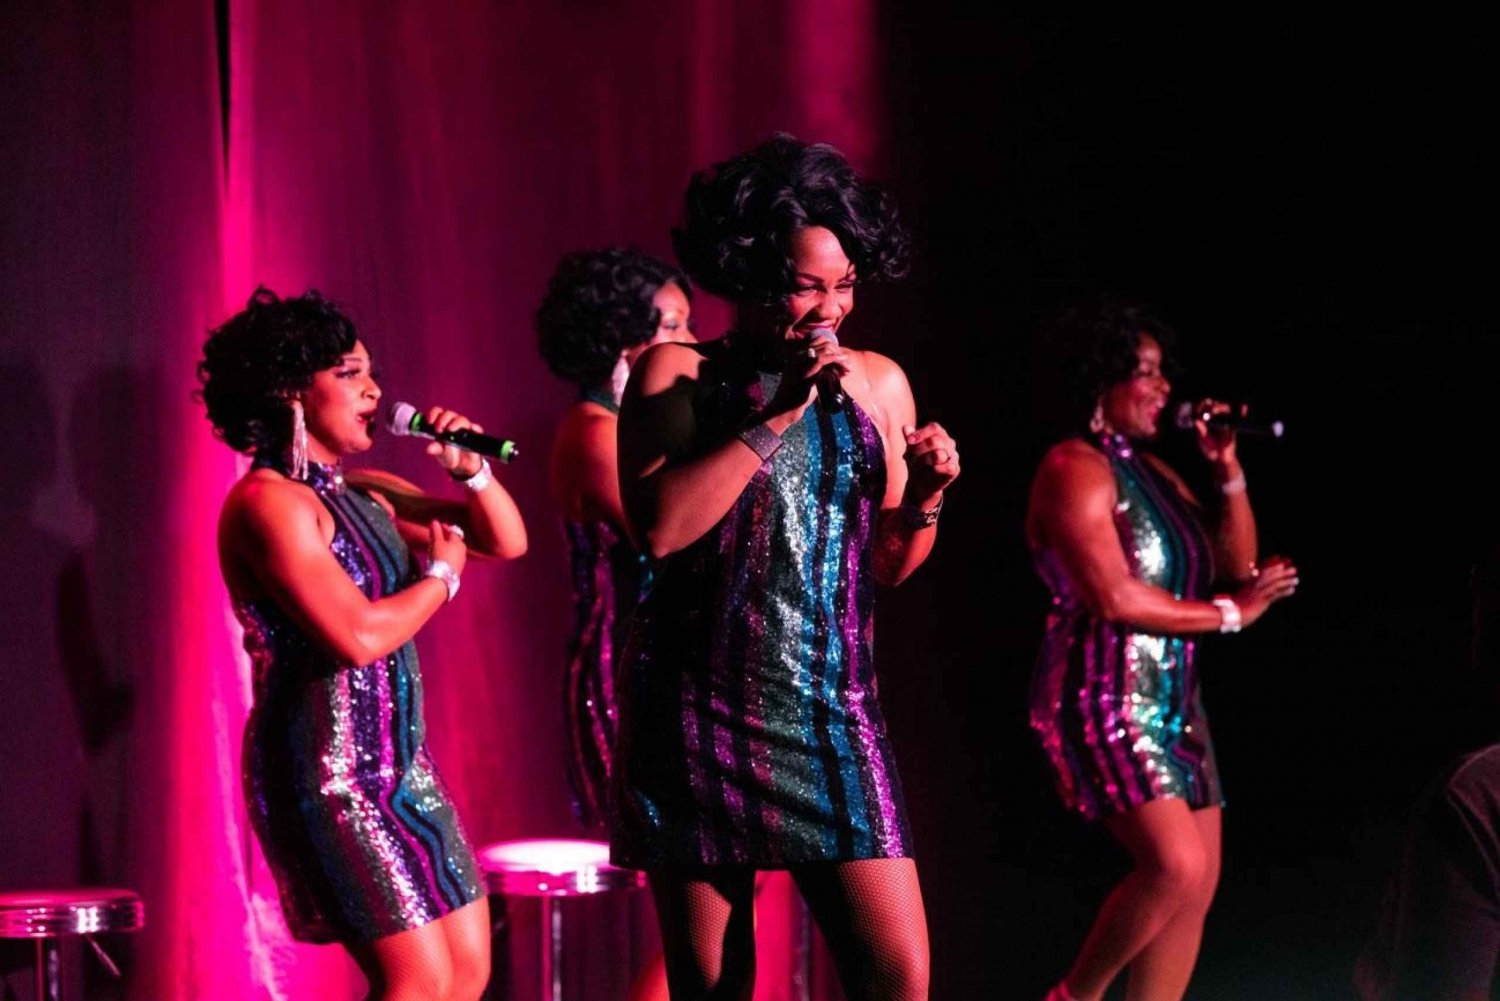 Las Vegas: All Motown Show med hertuginderne af Motown i hovedrollen